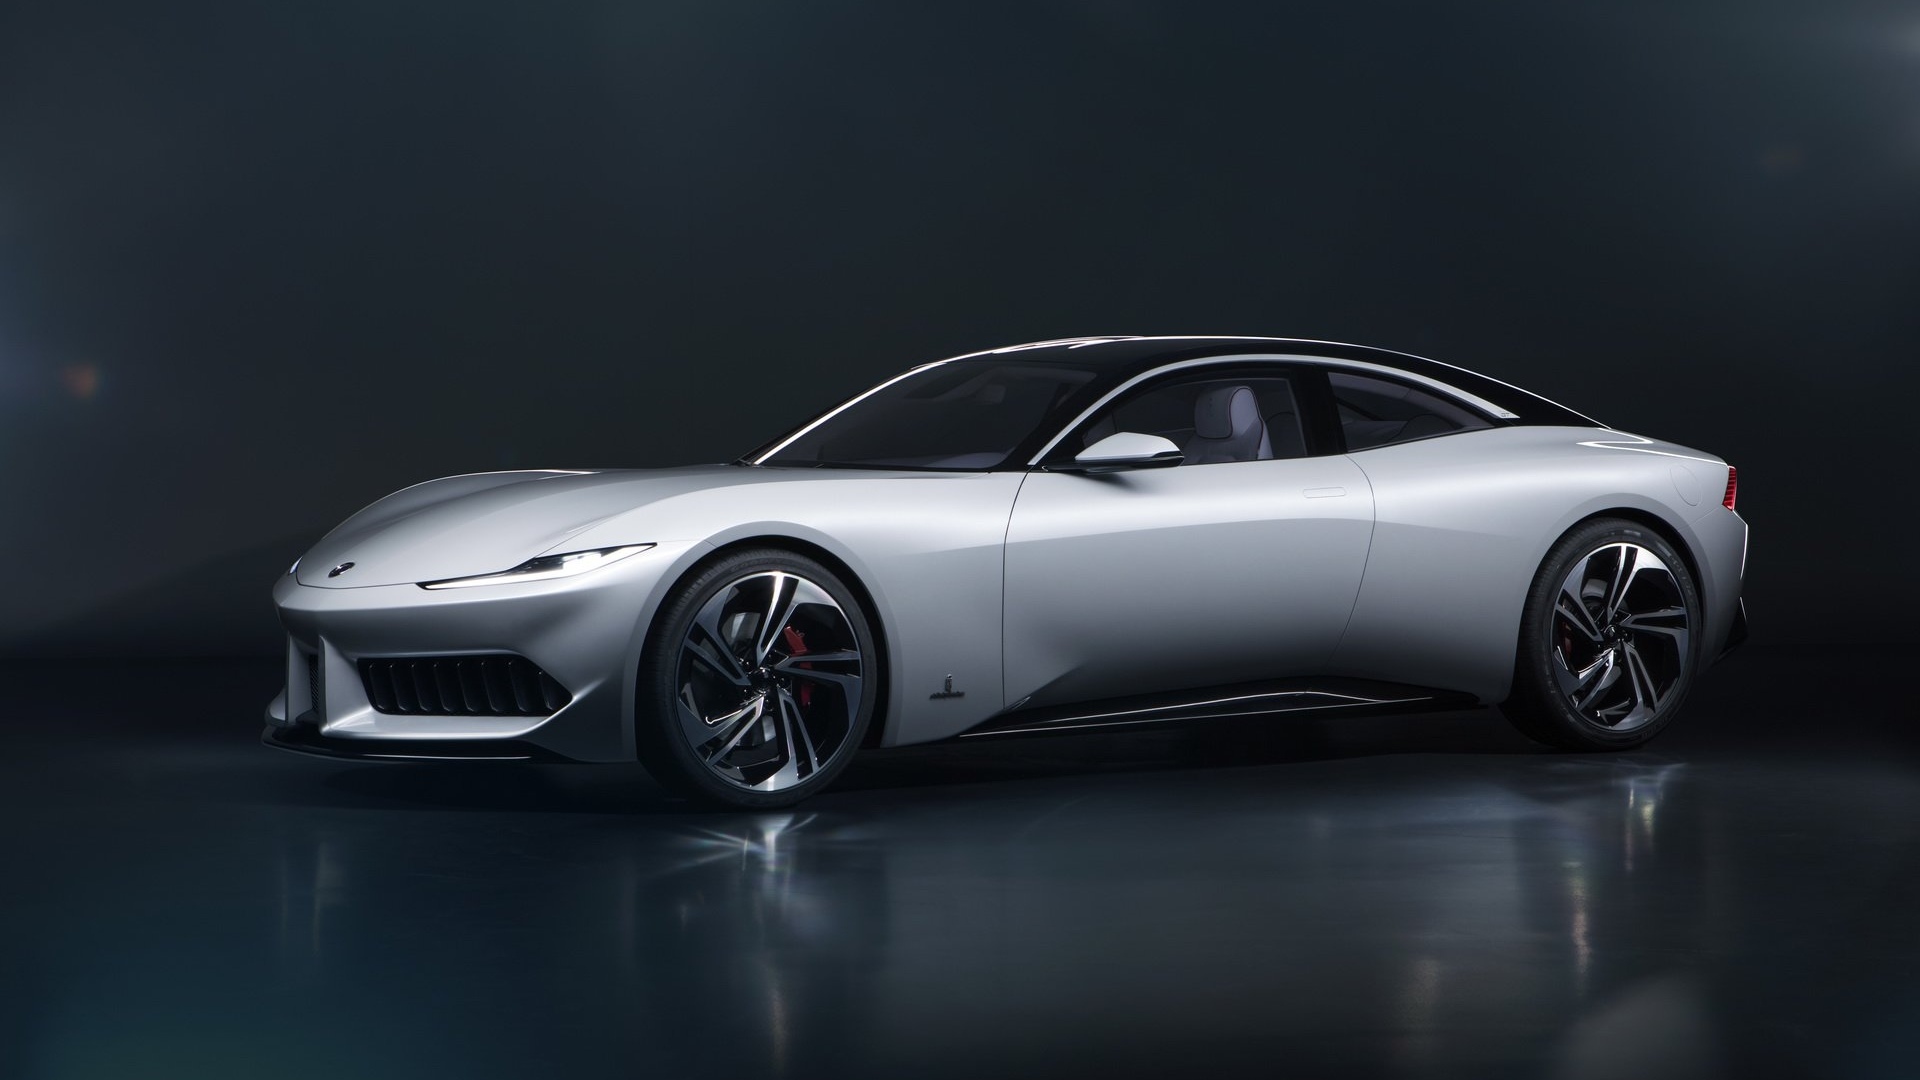 Karma presenta el Revero GT, Pininfarina GT y SC1 Vision Concept